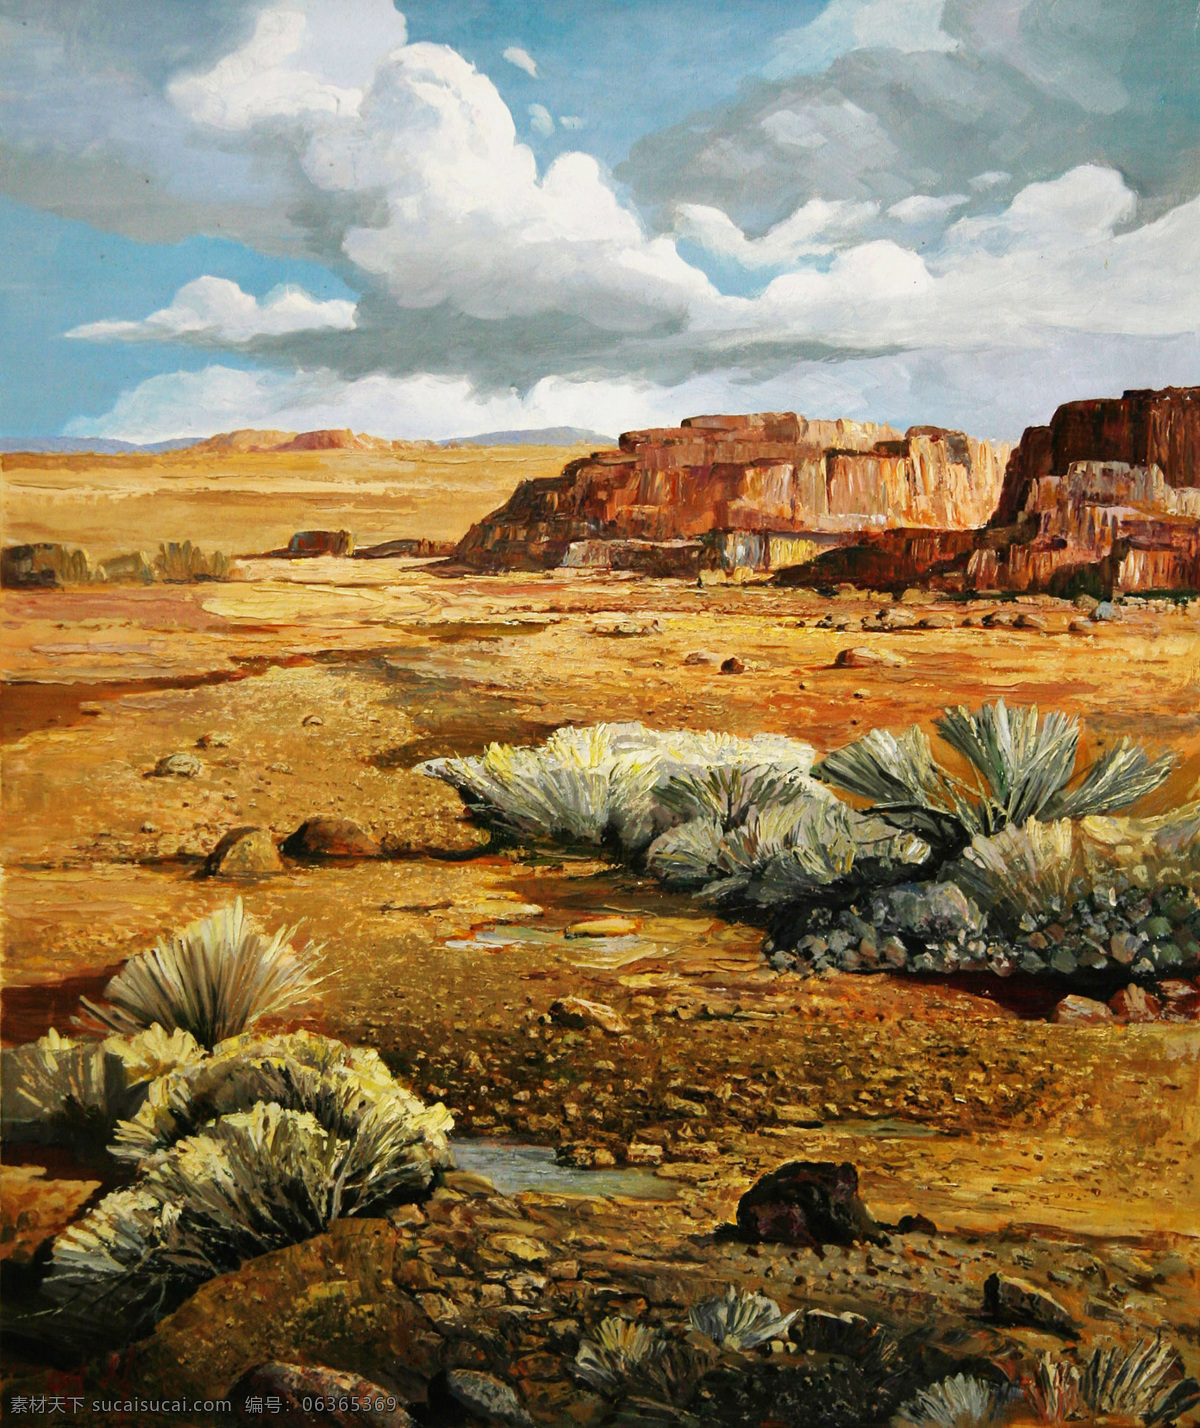 荒漠免费下载 高清风景油画 荒漠 油画素材下载 荒漠油画素材 荒漠油画 装饰素材